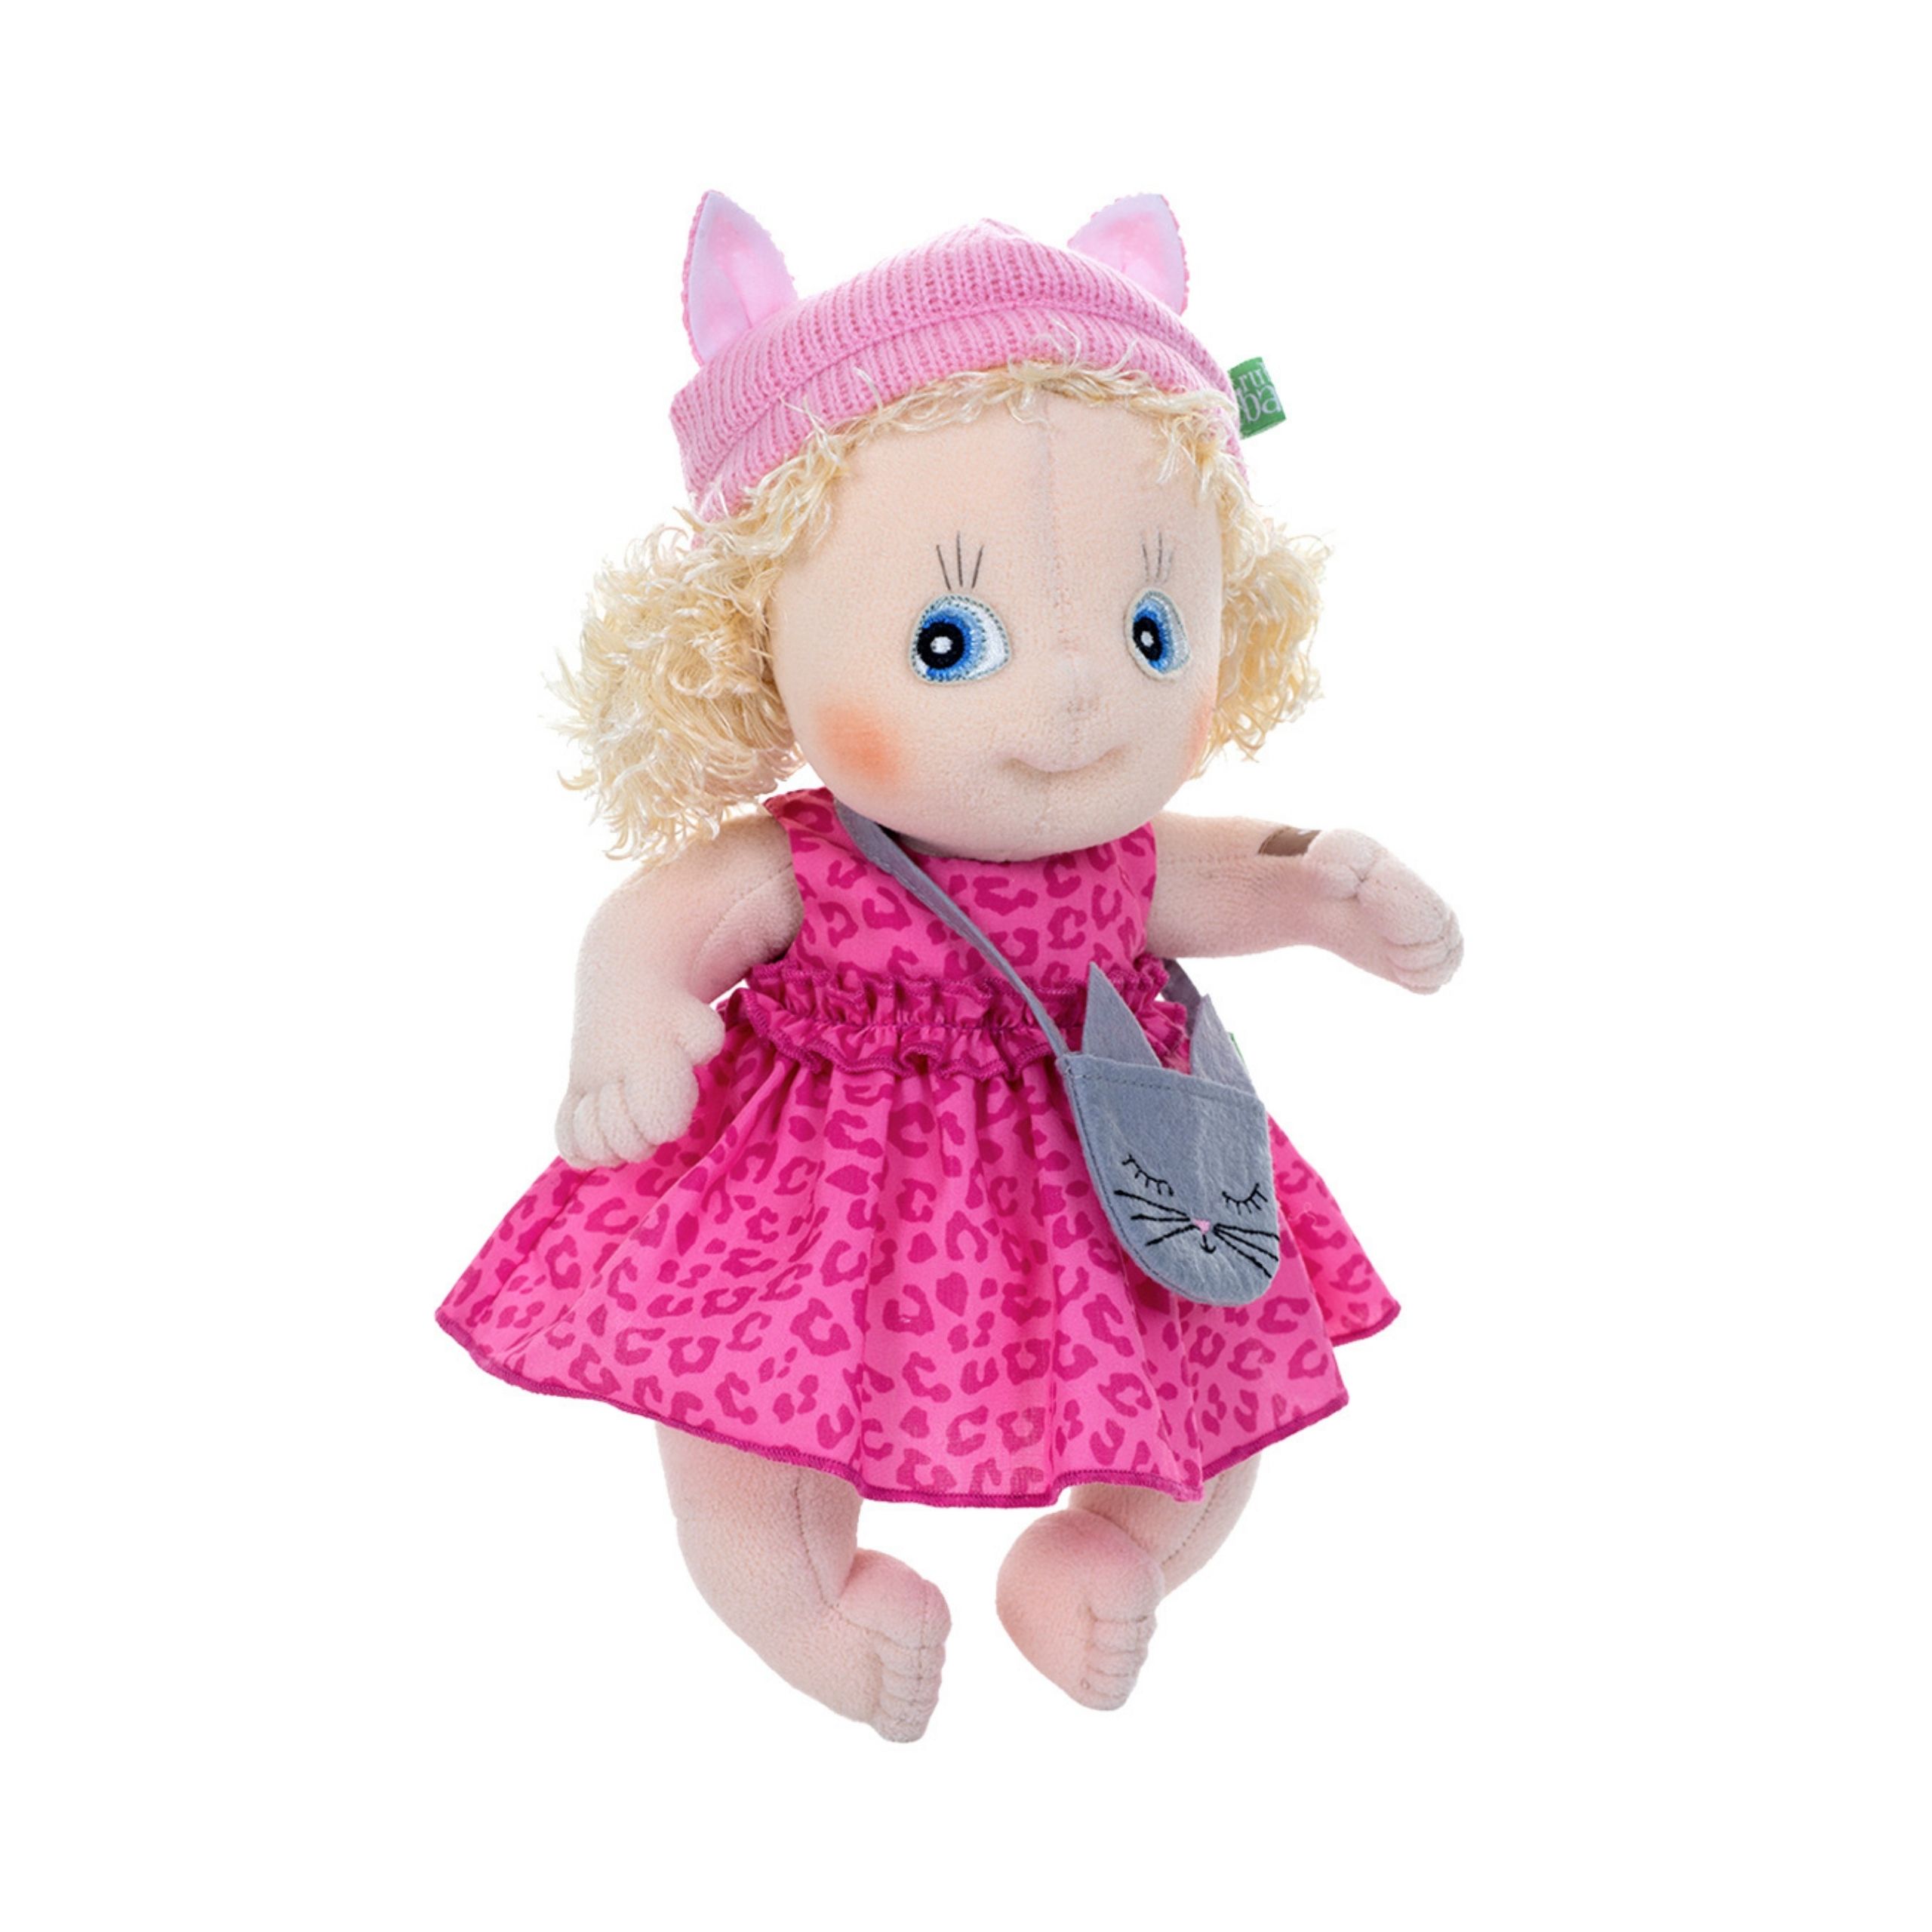 Dolls rubens barn soft doll emelie cutie activity